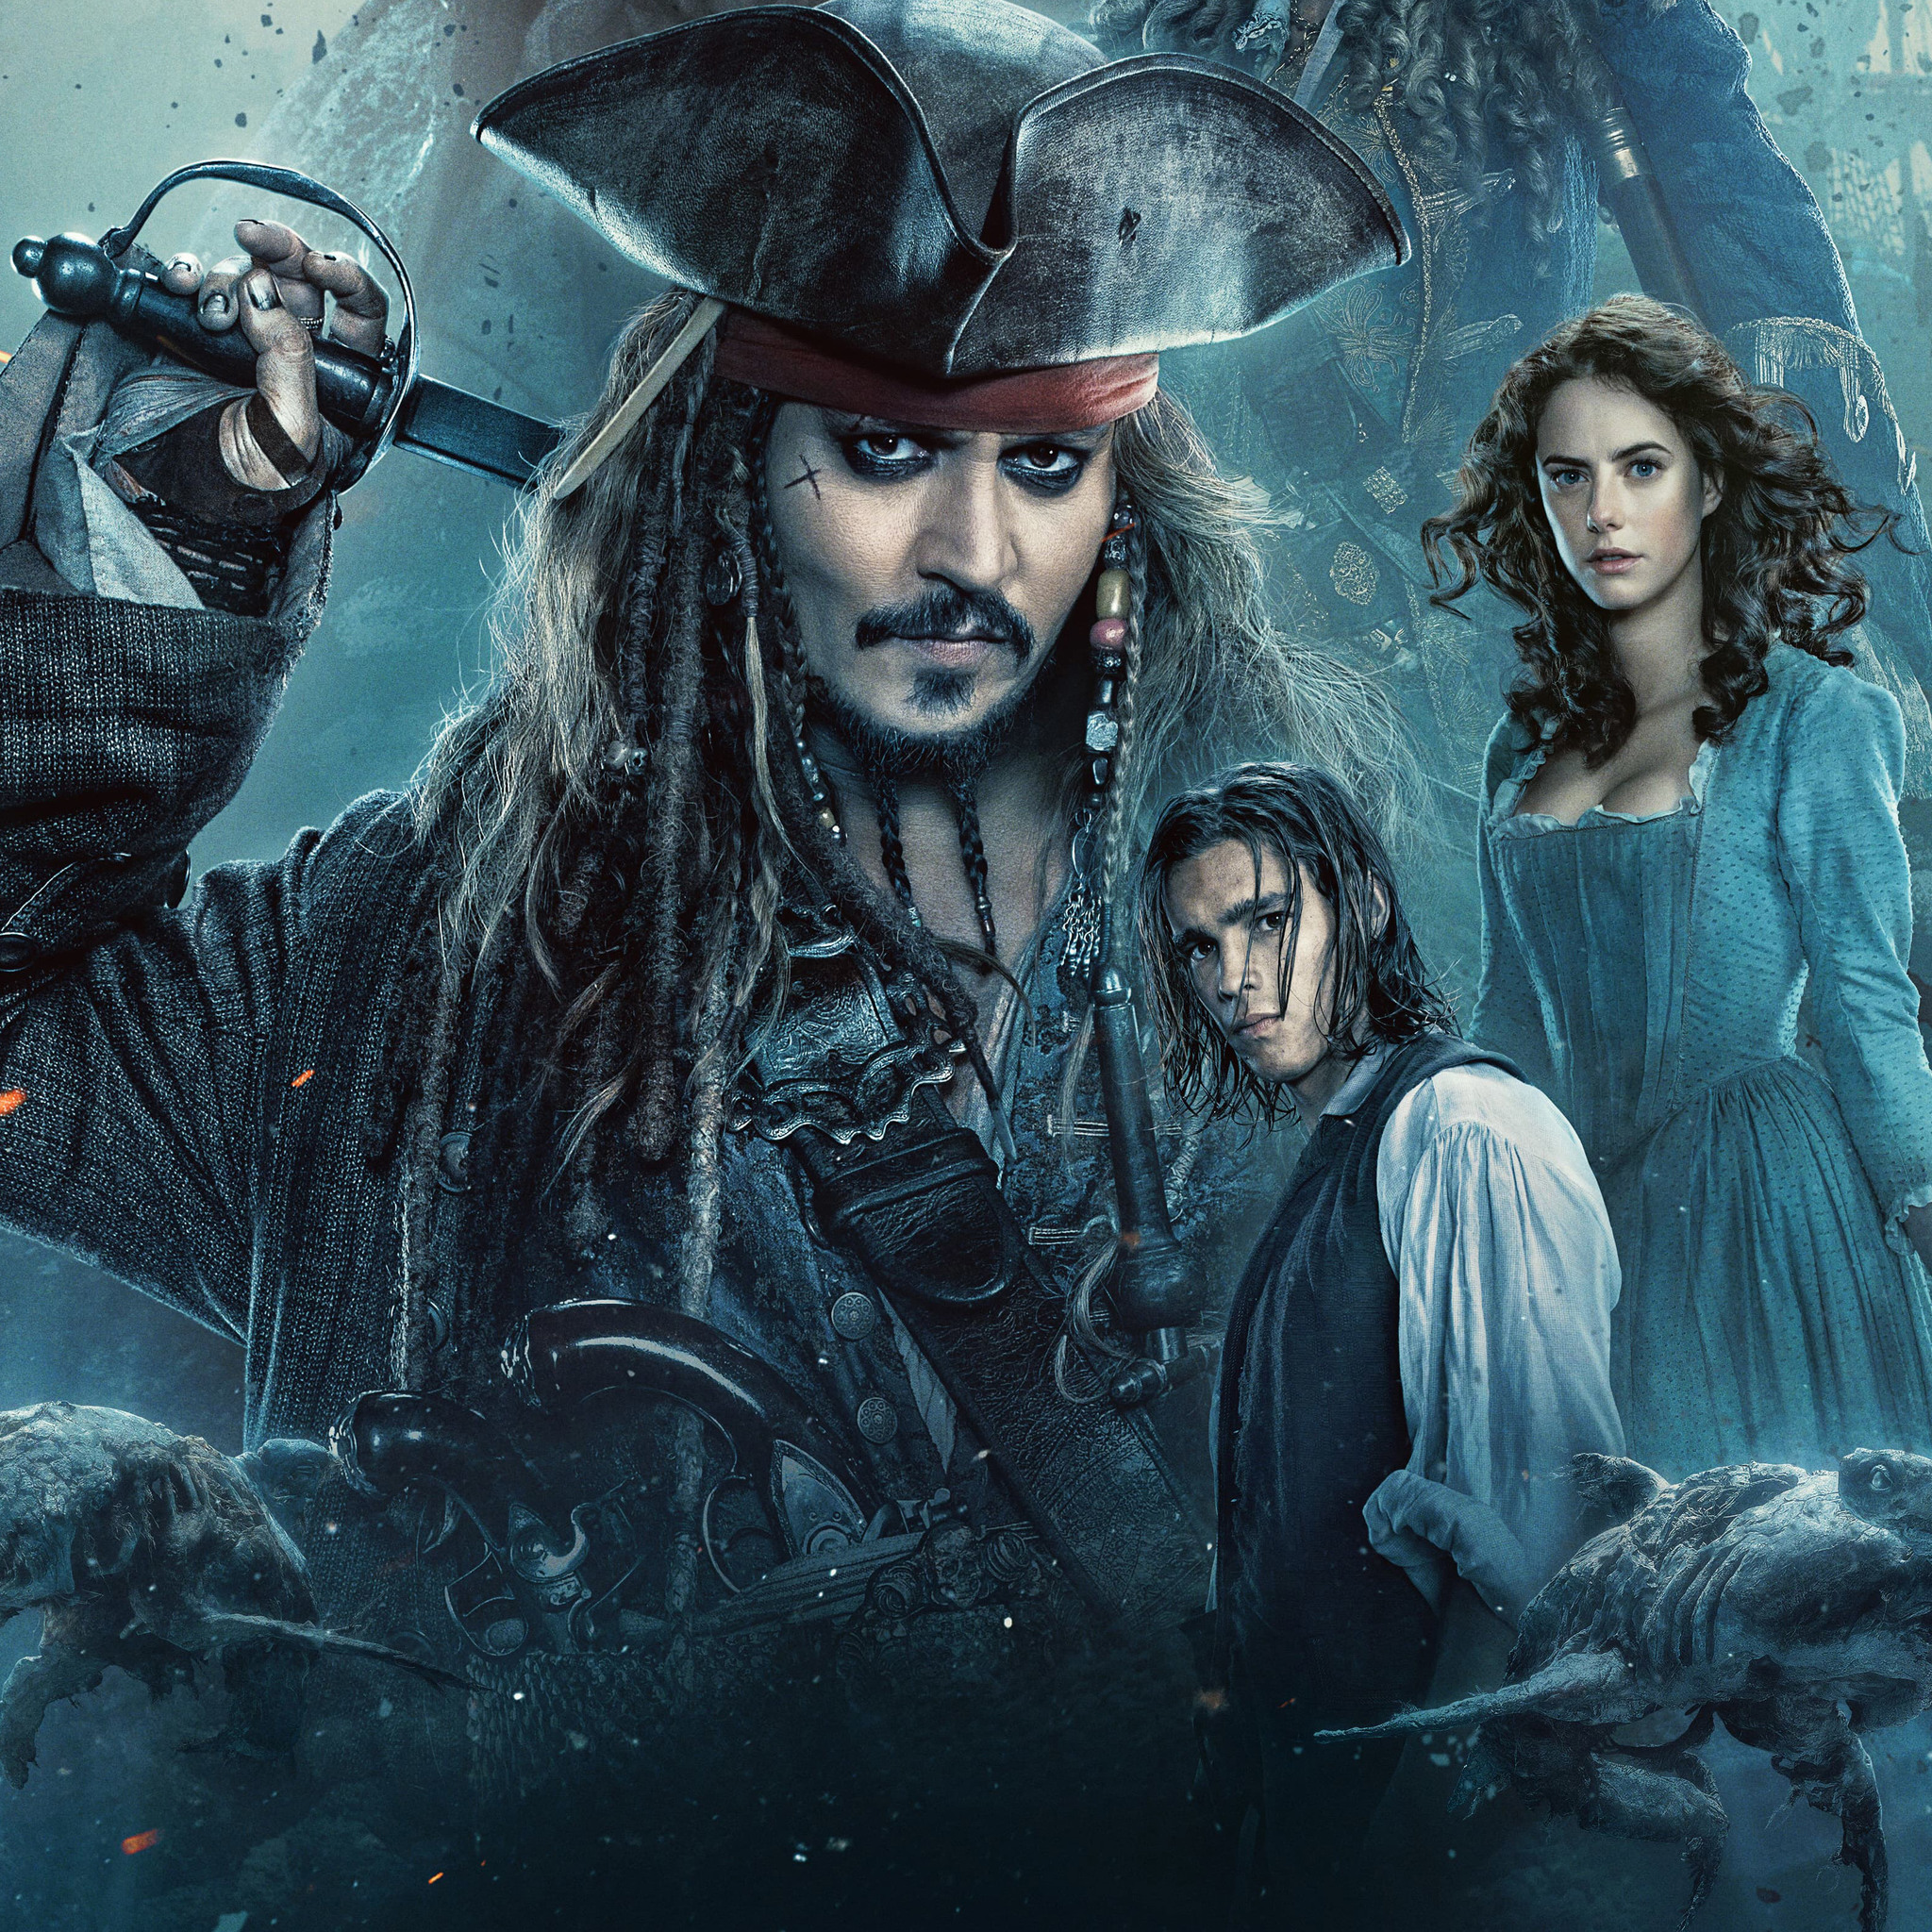 pirates 2005 full movie download brrip 720p english sub